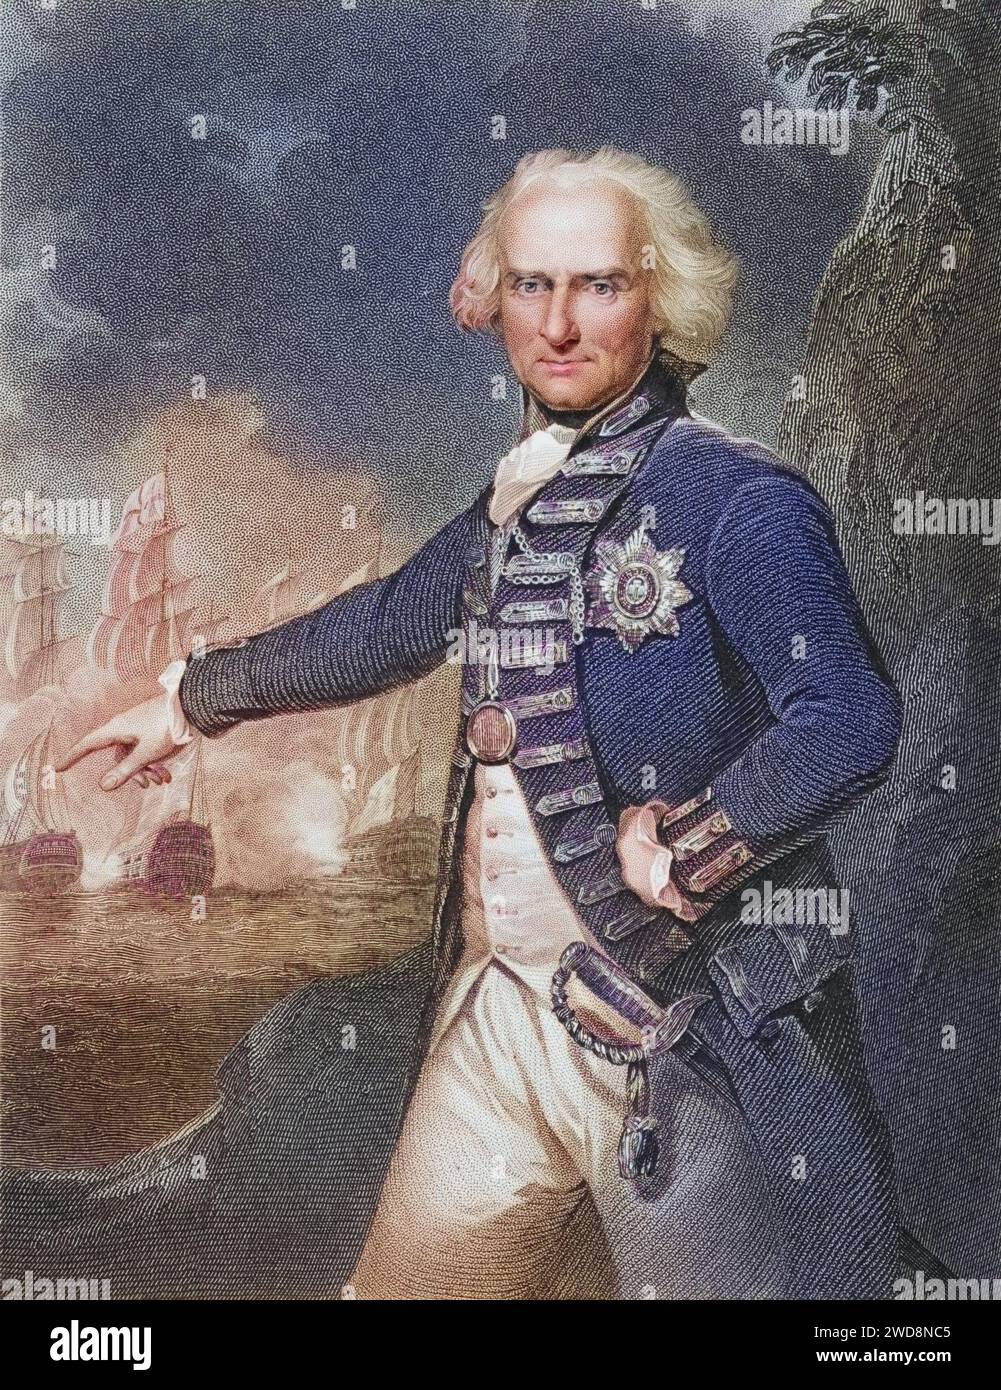 Alexander Hood 1. Viscount Bridport, 1726-1814. Britischer Admiral, Historisch, digital restaurierte Reproduktion von einer Vorlage aus dem 19. Jahrhundert, Record date not stated Stock Photo